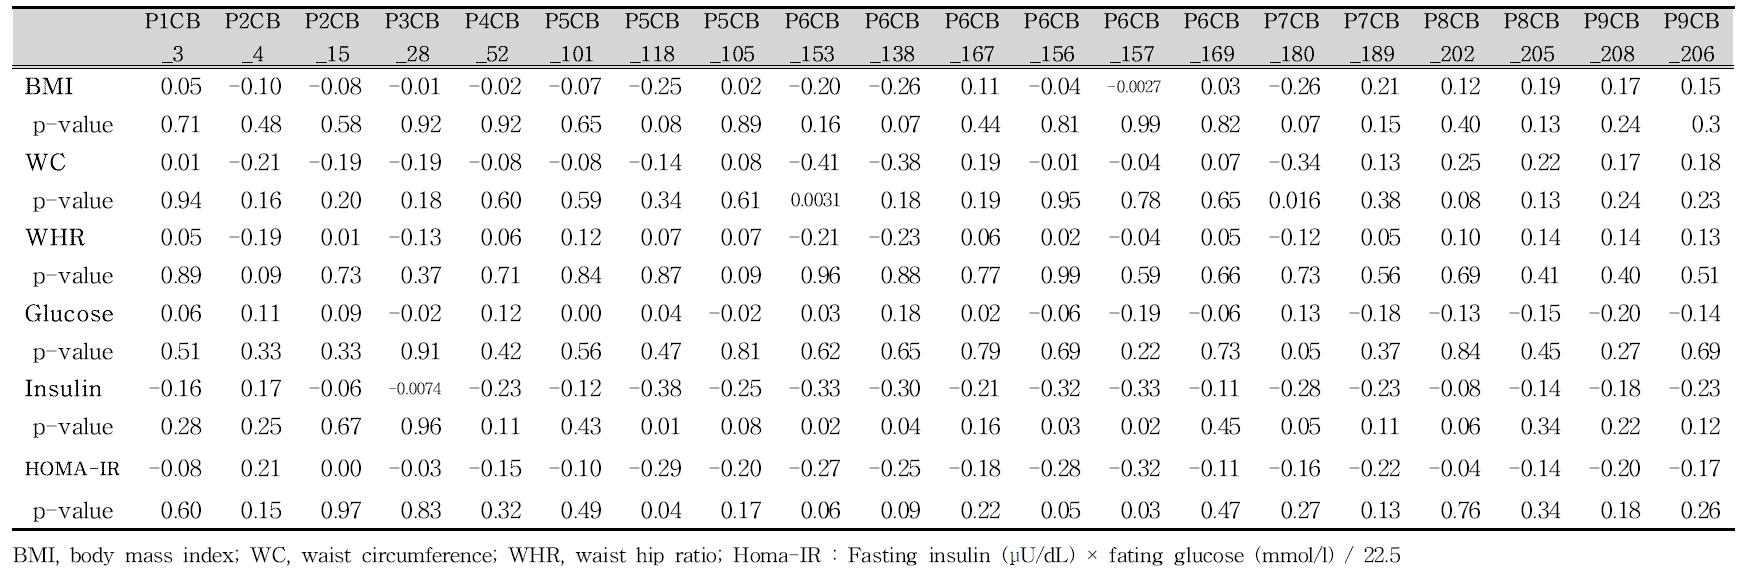 남녀전체에서 비만/대사지표와 노출지표 (PCBs, ng/g lipid) 와의 Spearman 상관분석 (ND=LOD/2)